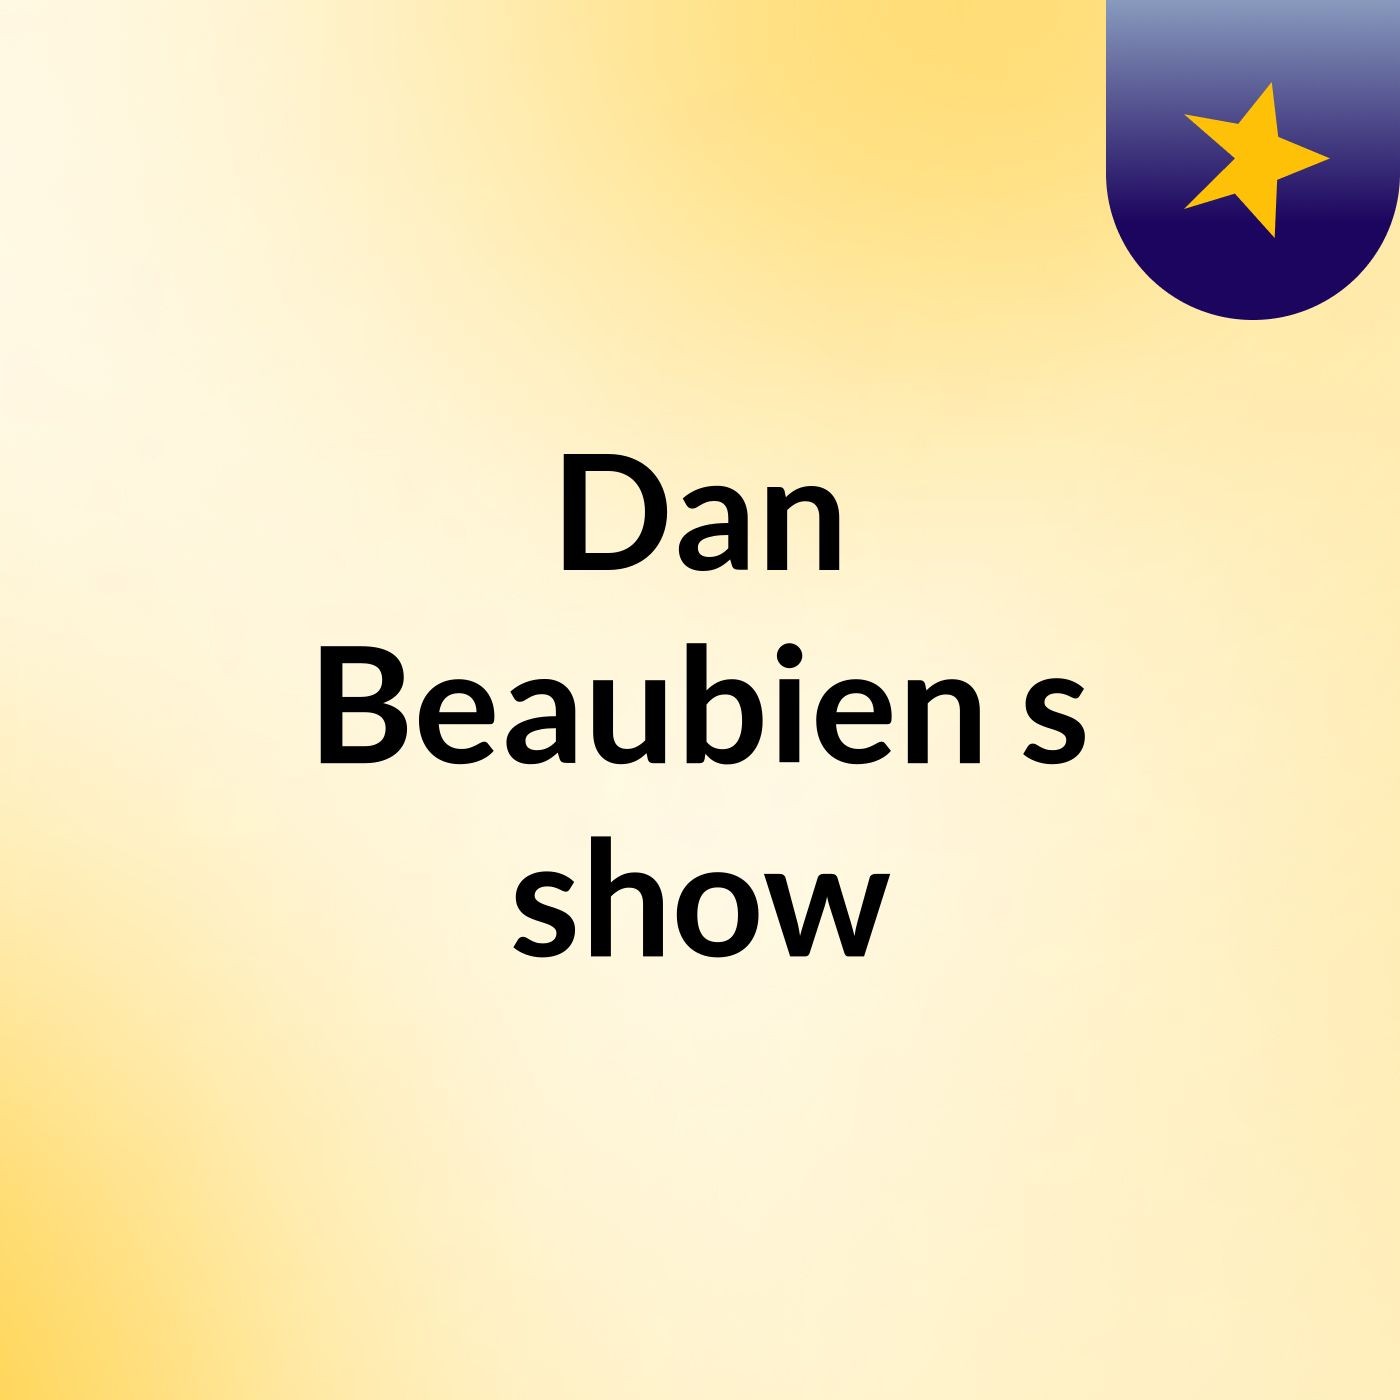 Dan Beaubien's show